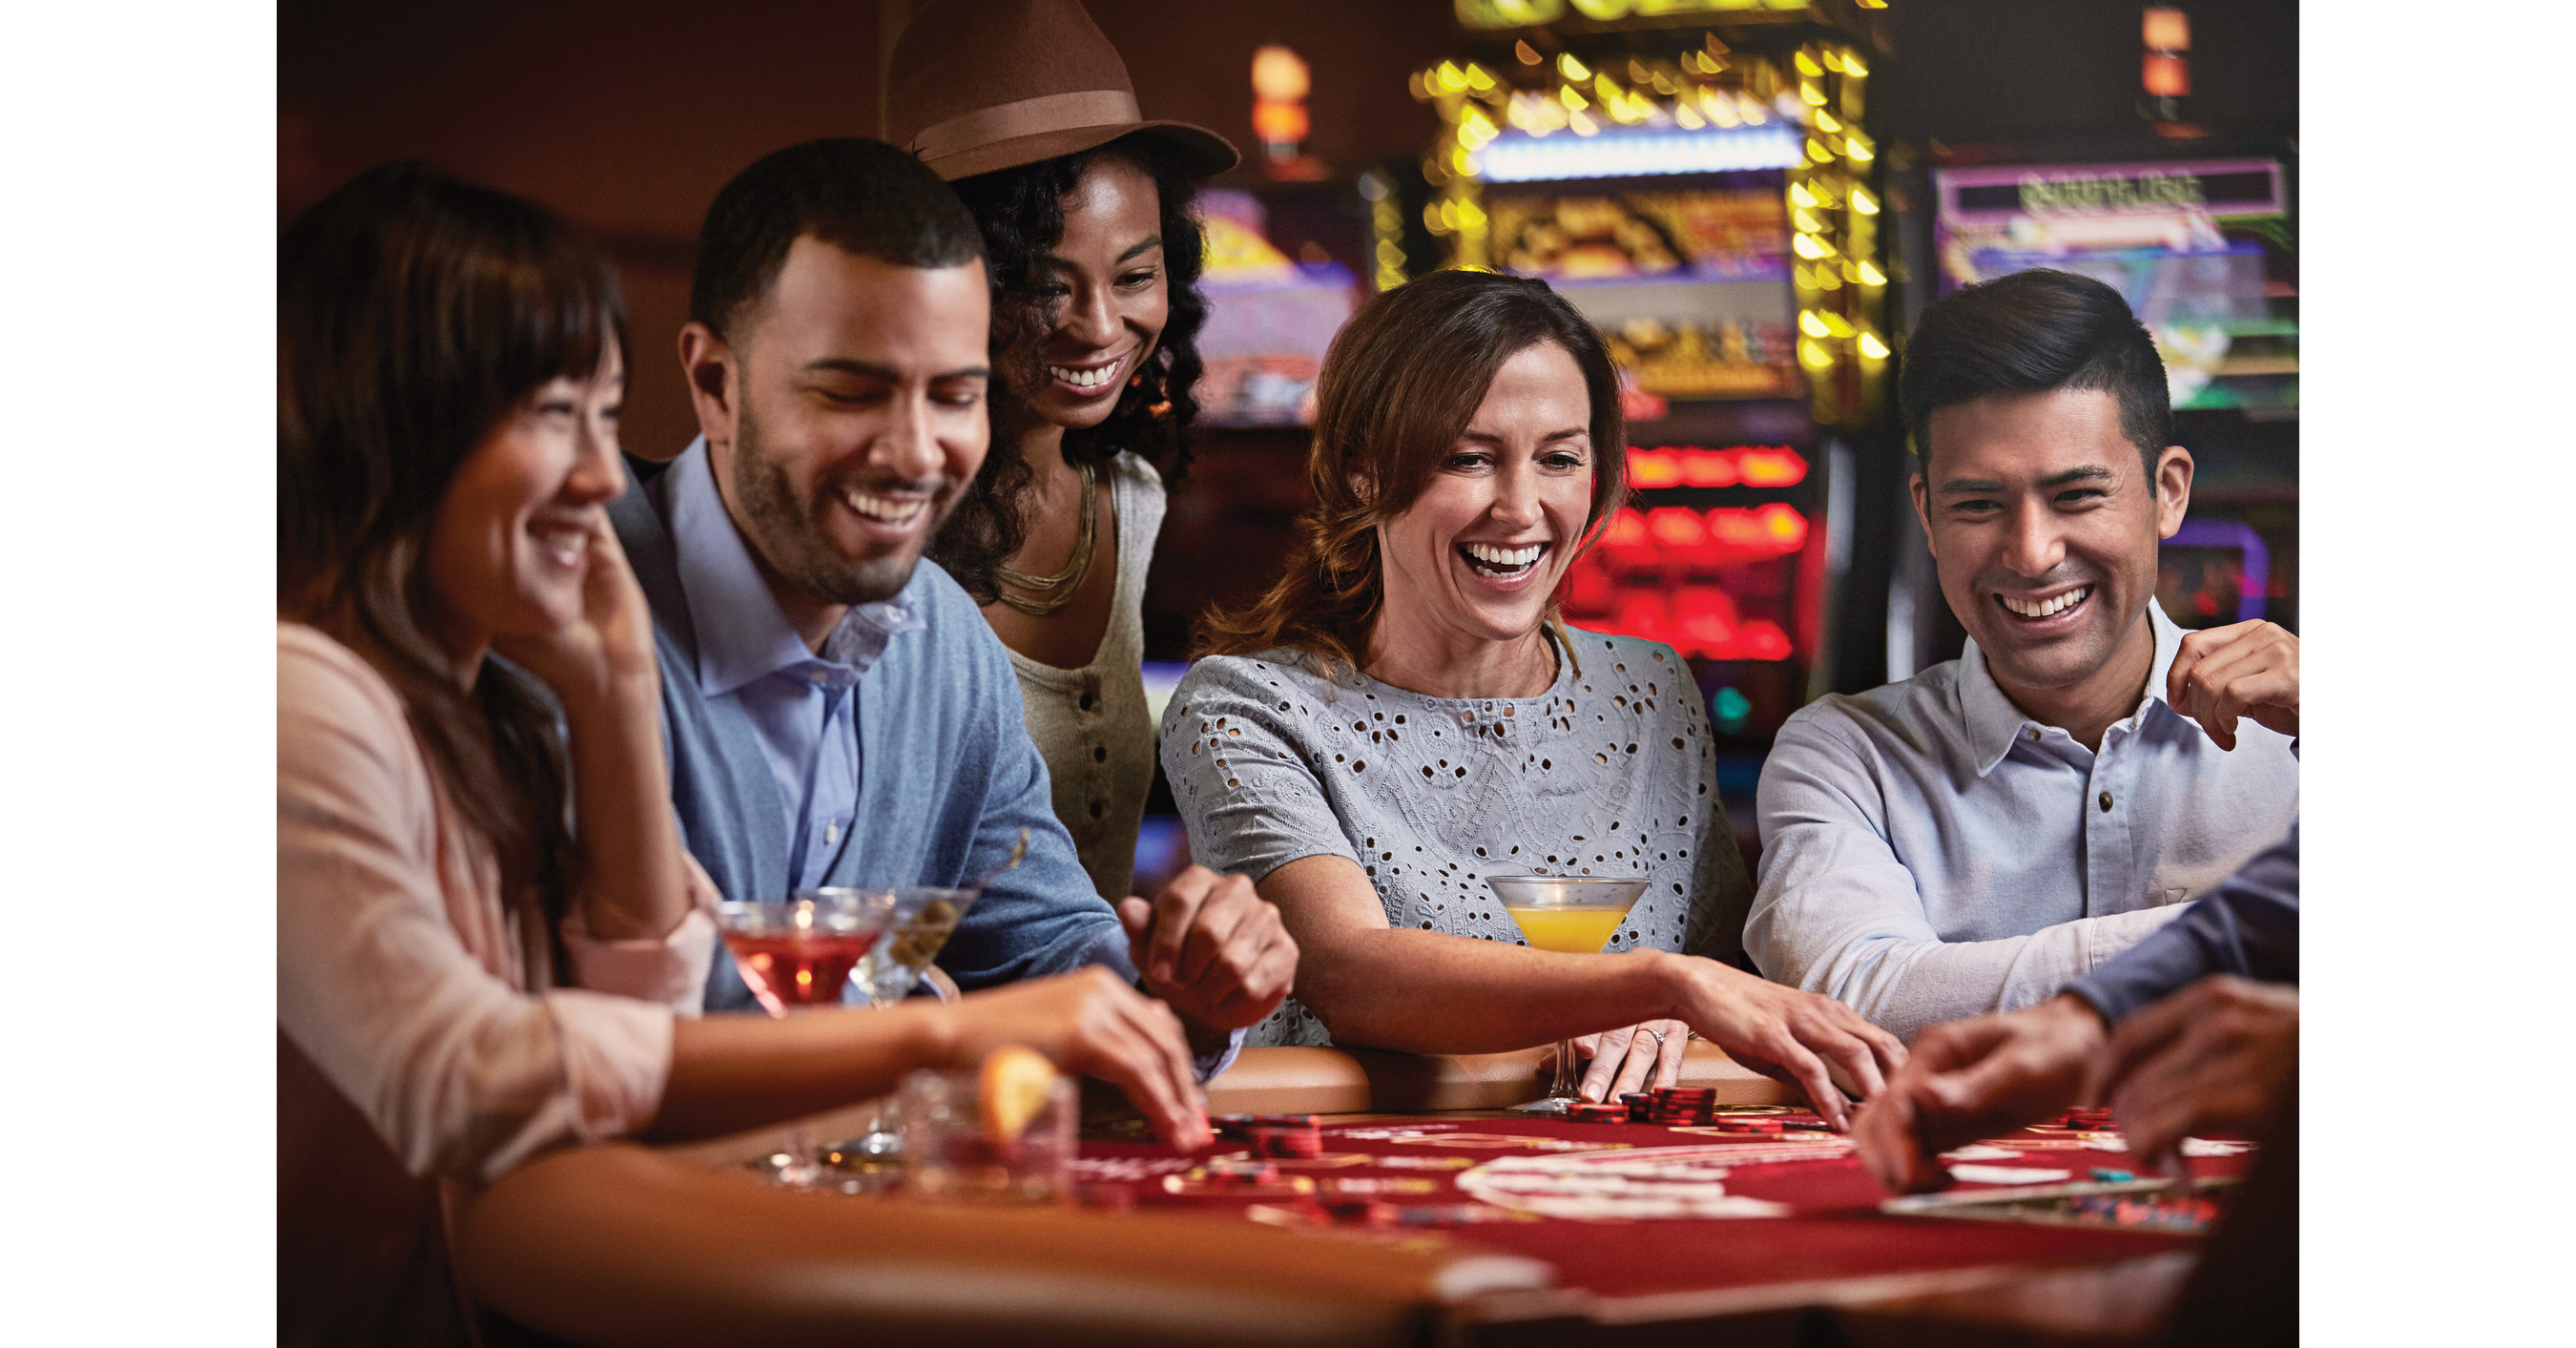 Gambling cruises, cruise ship gambling. All about gambling on cruises